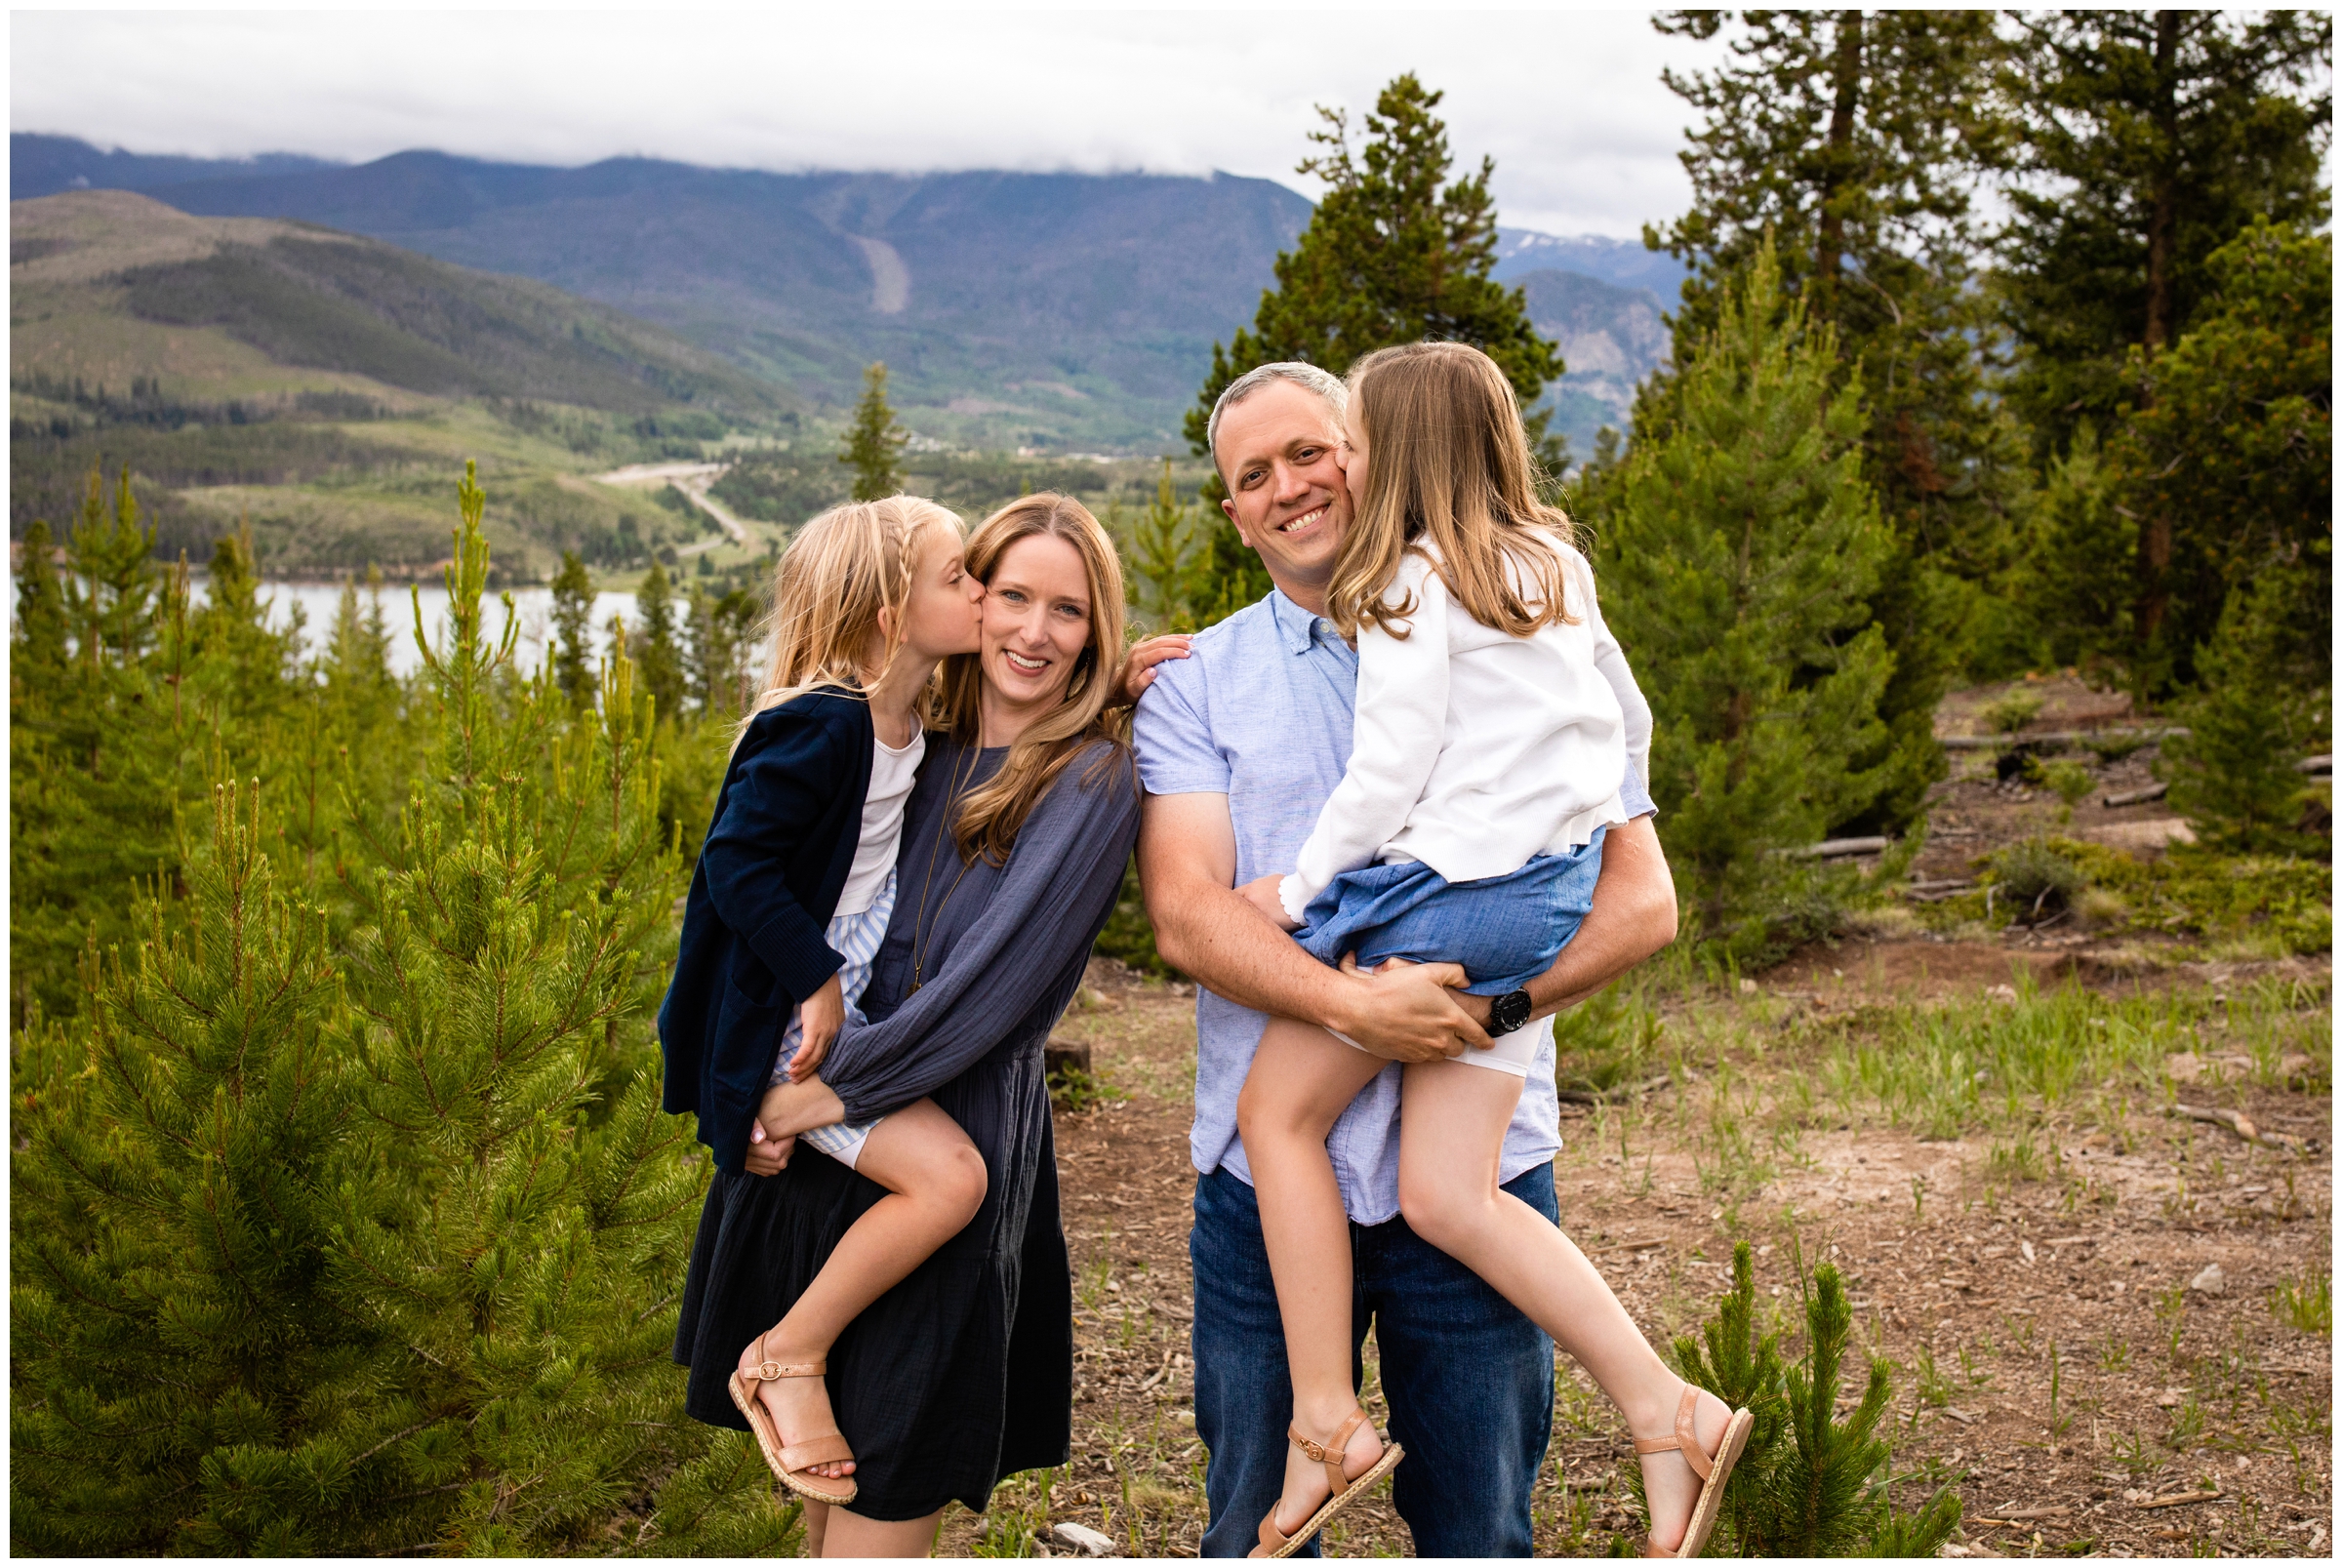 fun candid family photos in the Colorado mountains of Breckenridge 